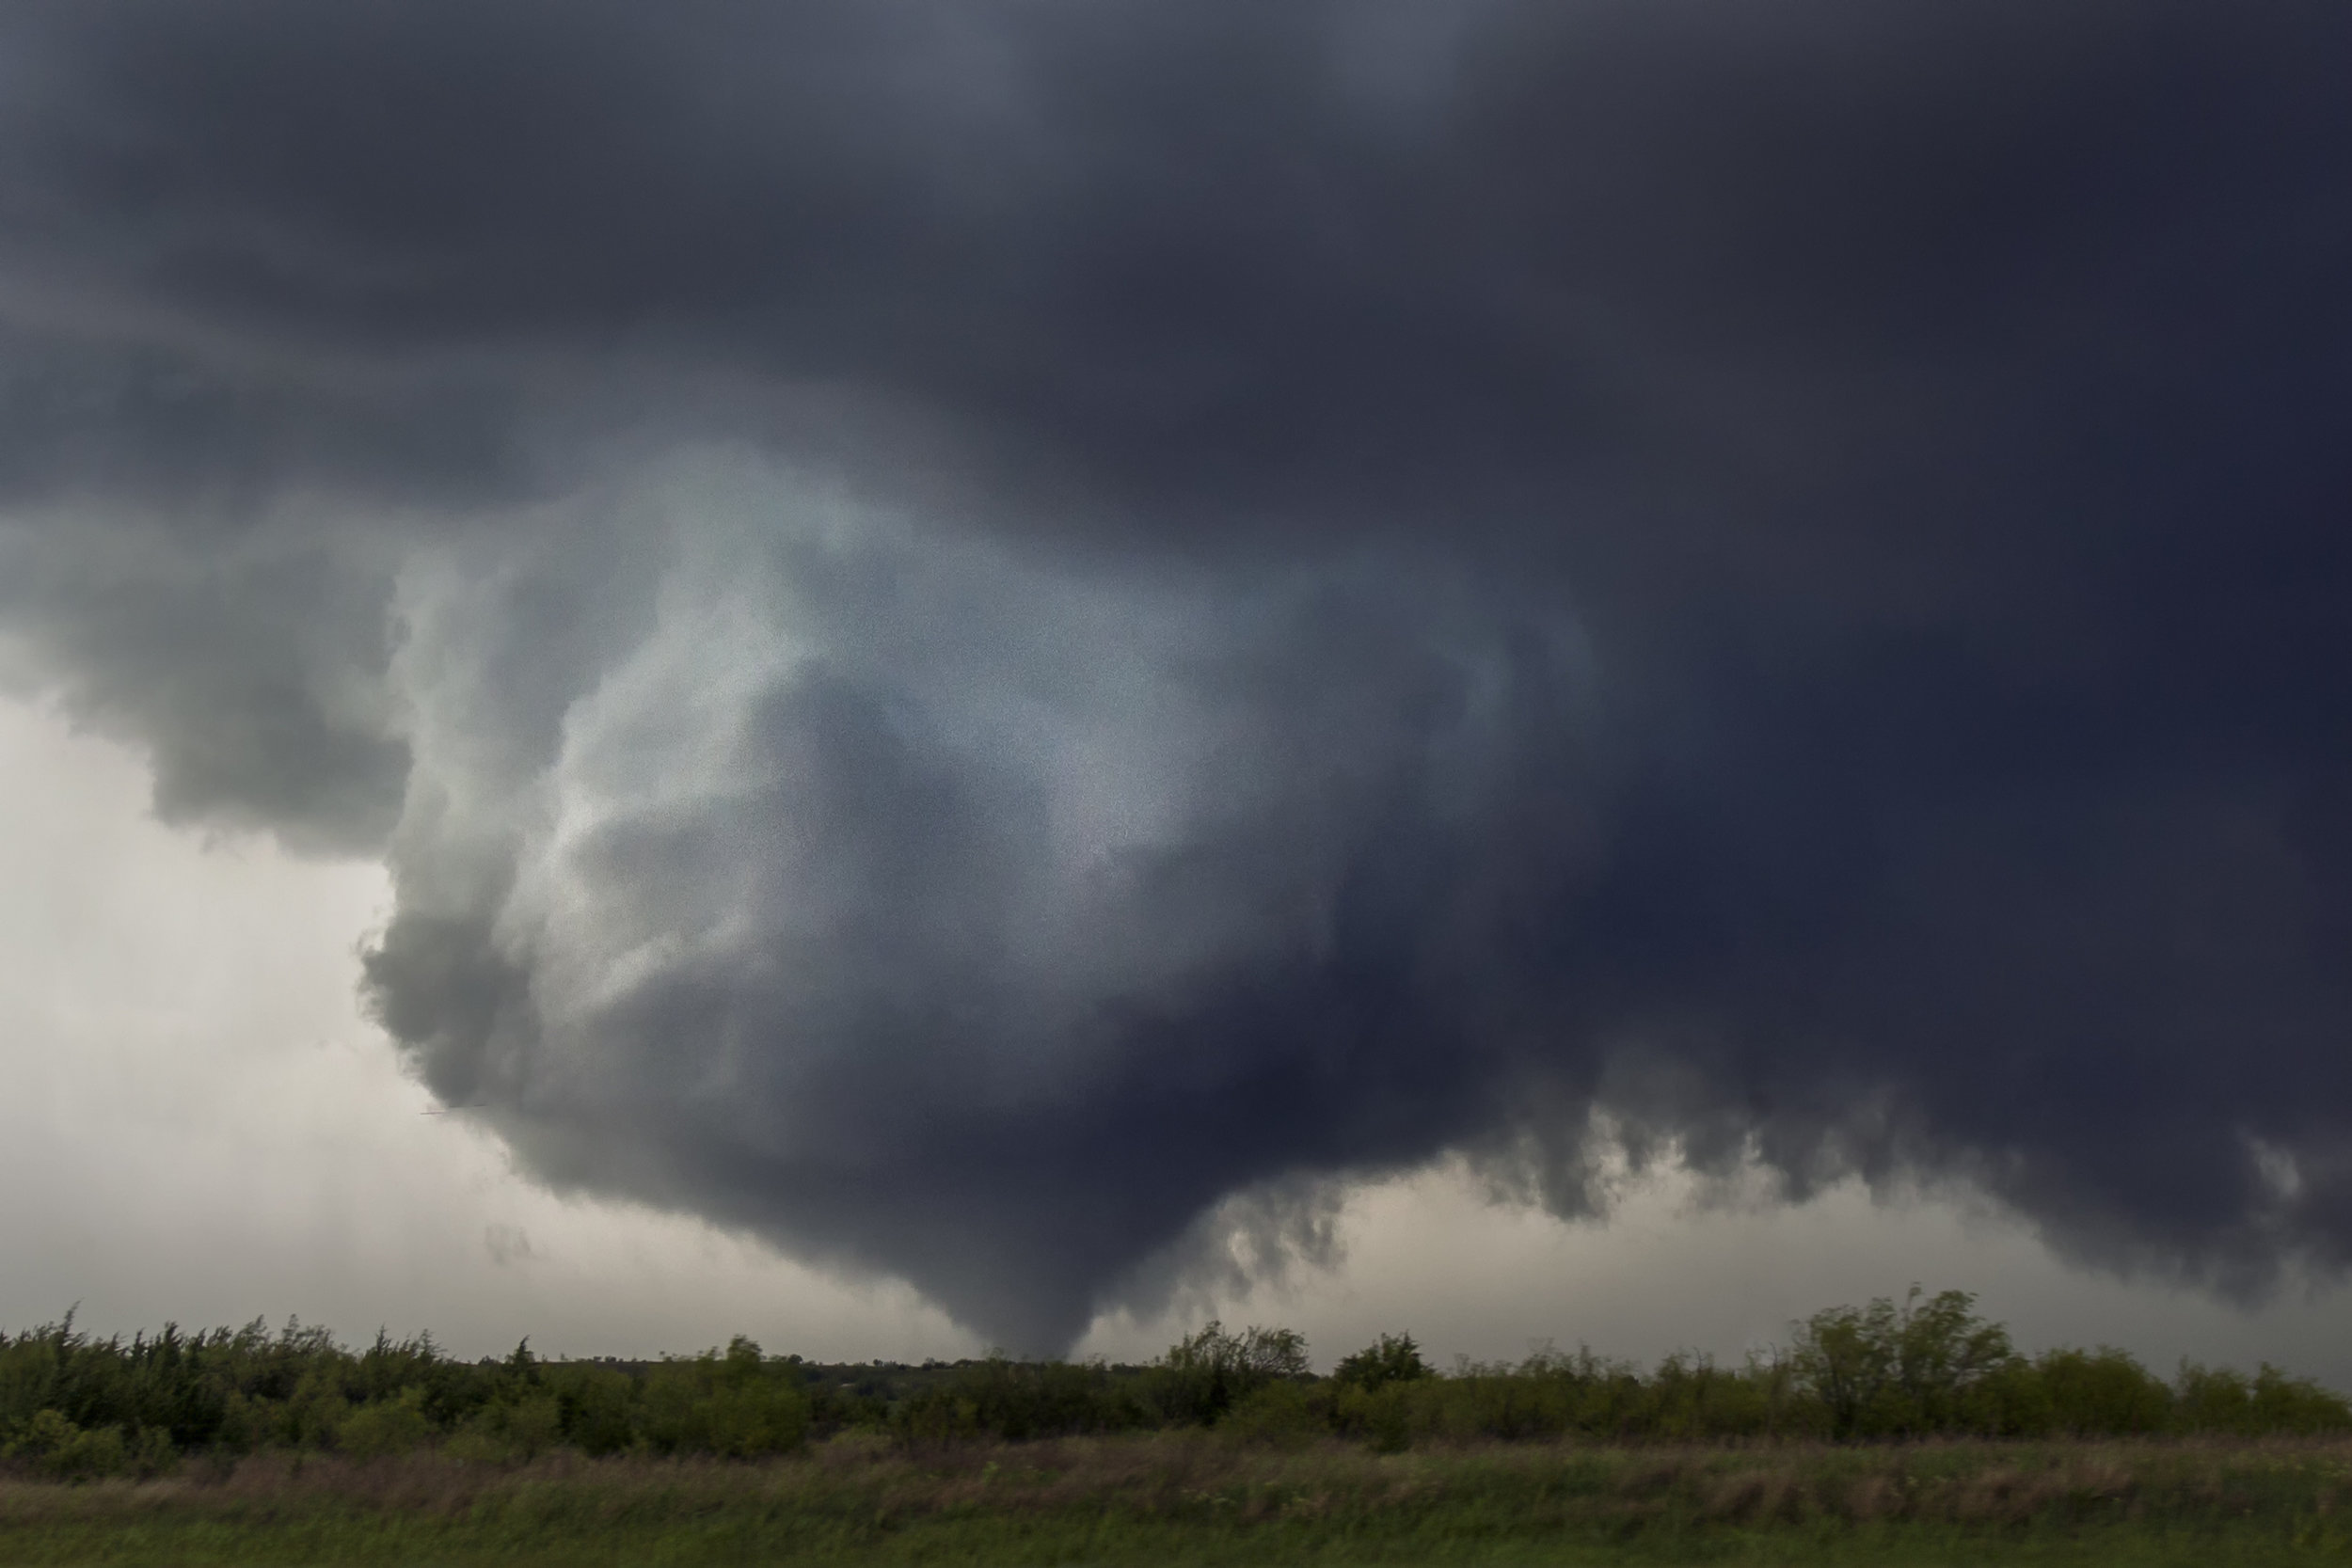 Collar Cloud and Cone Tornado - Waynoka, Oklahoma May 18, 2017.jpg